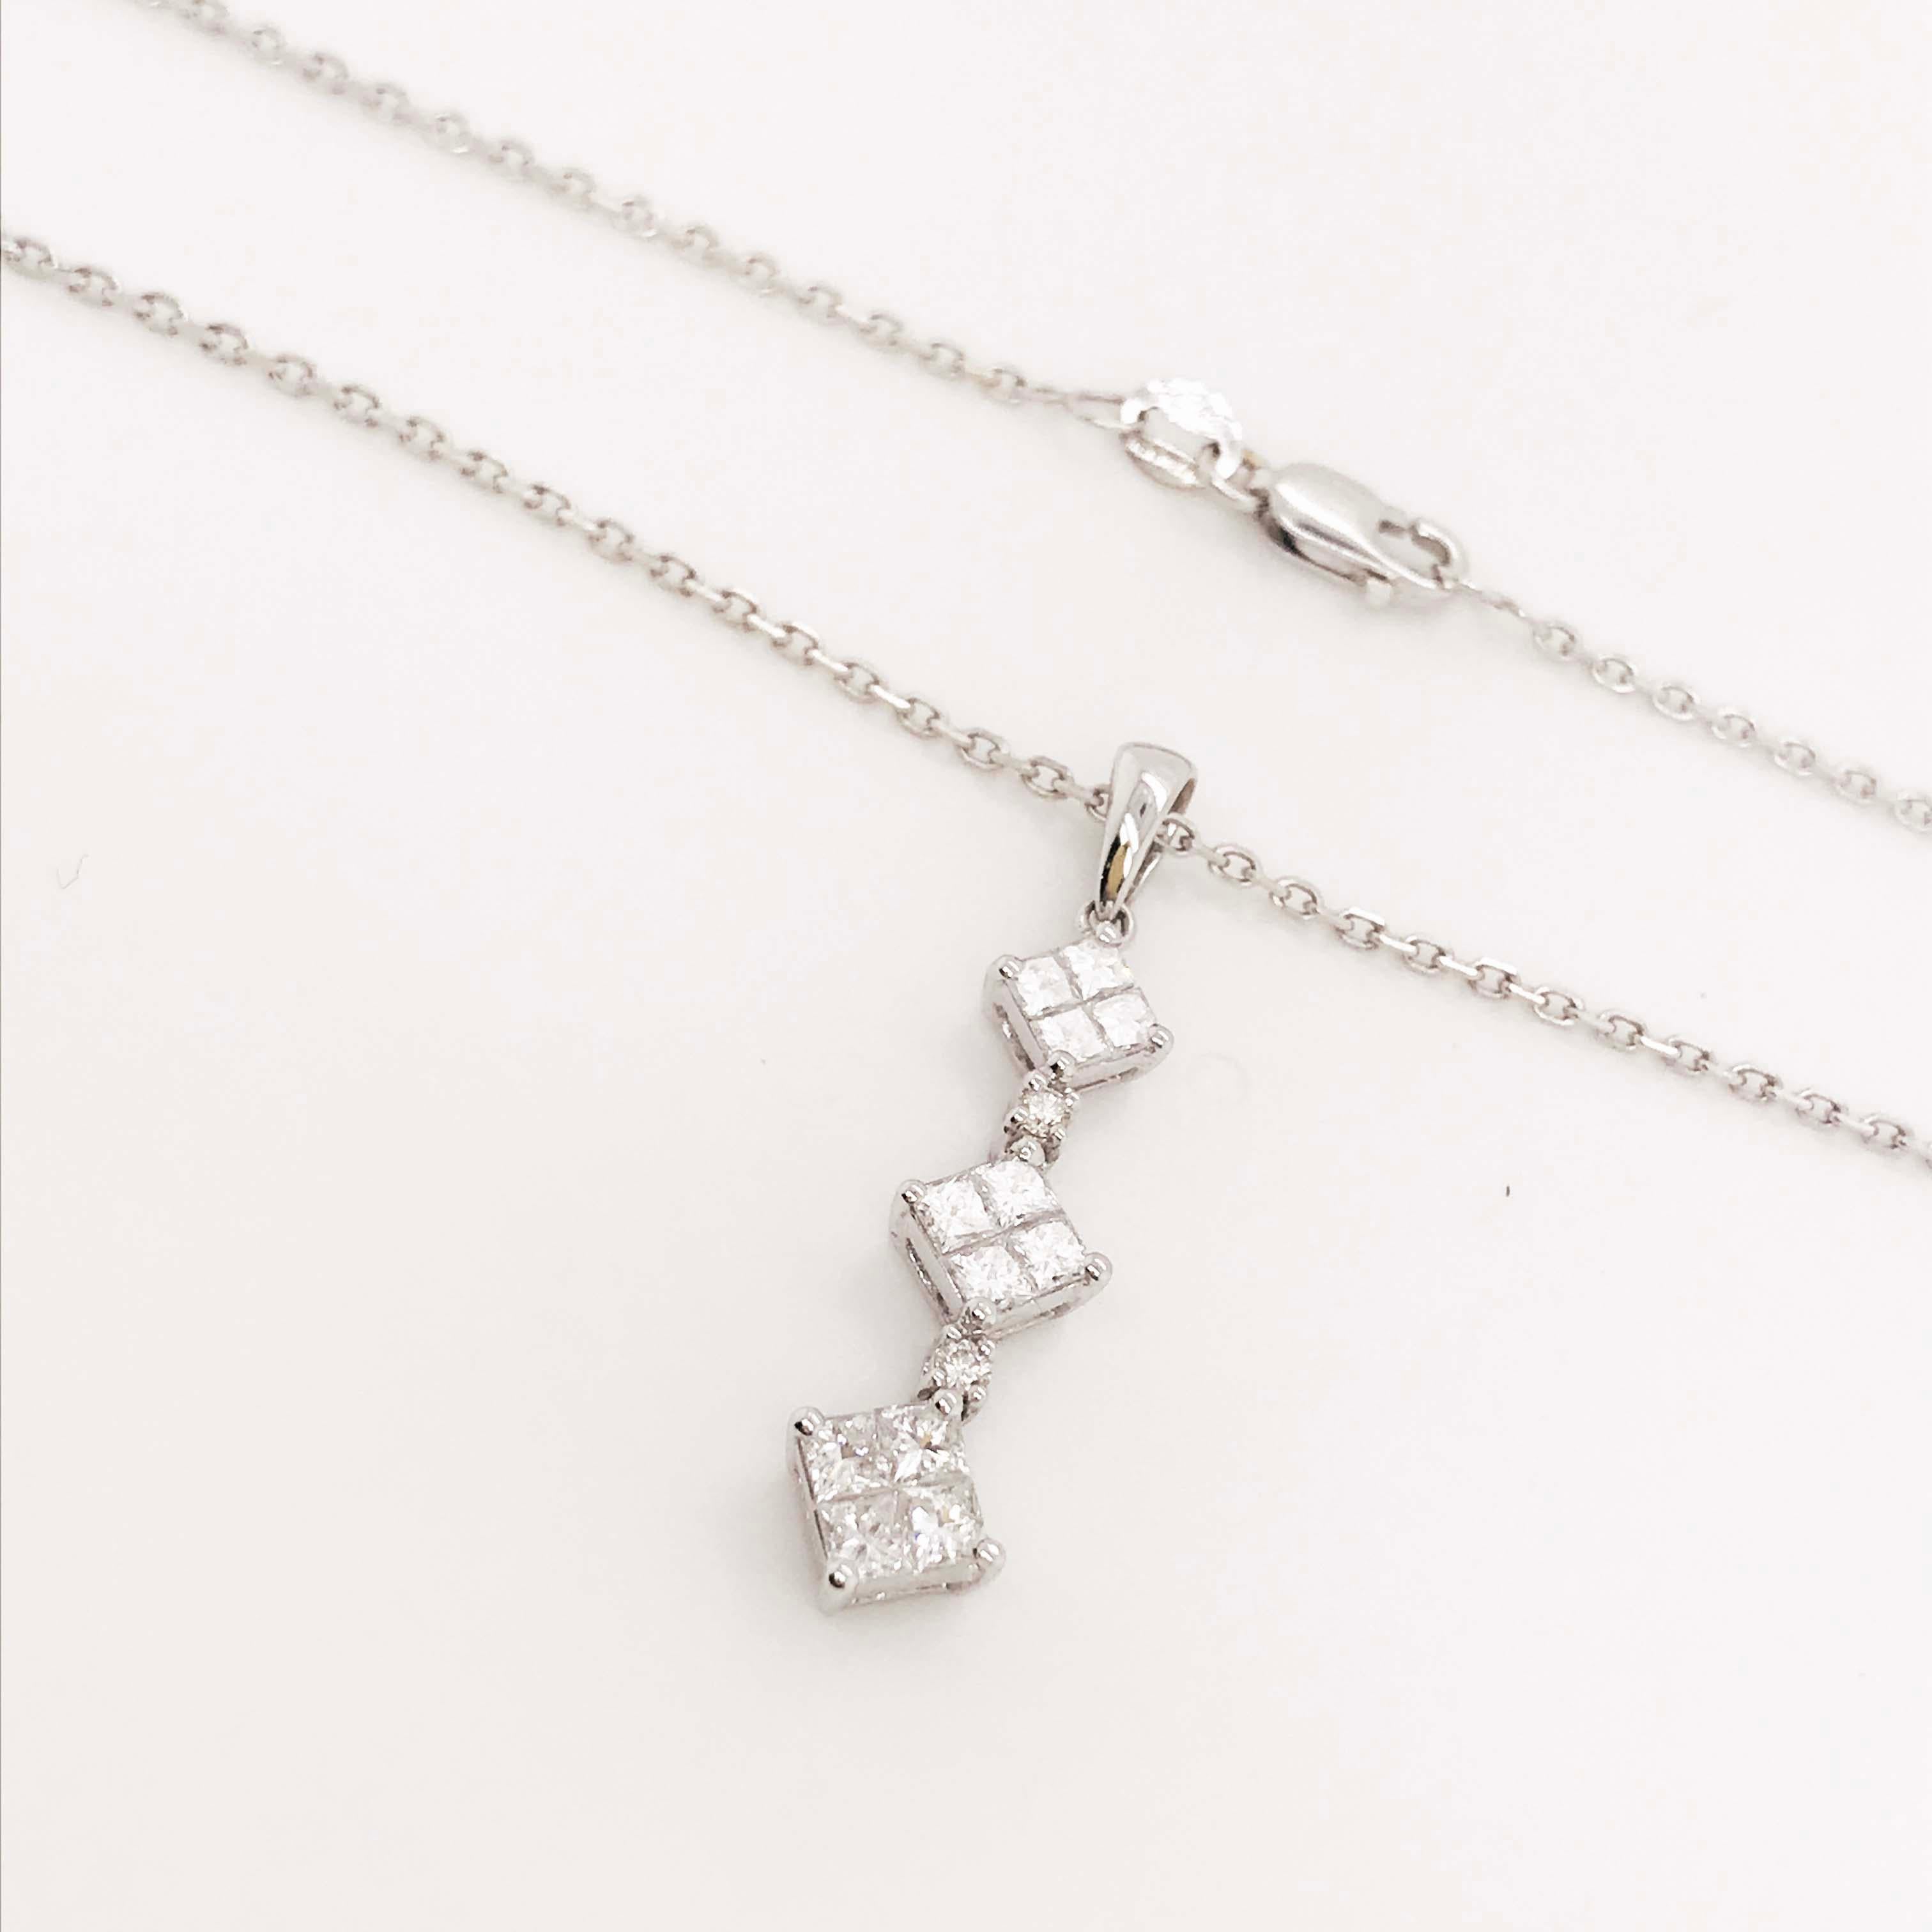 Princess Cut Diamond Drop Necklace, 0.75 Carat '3/4 Carat' Princess cut, 18 Karat White Gold